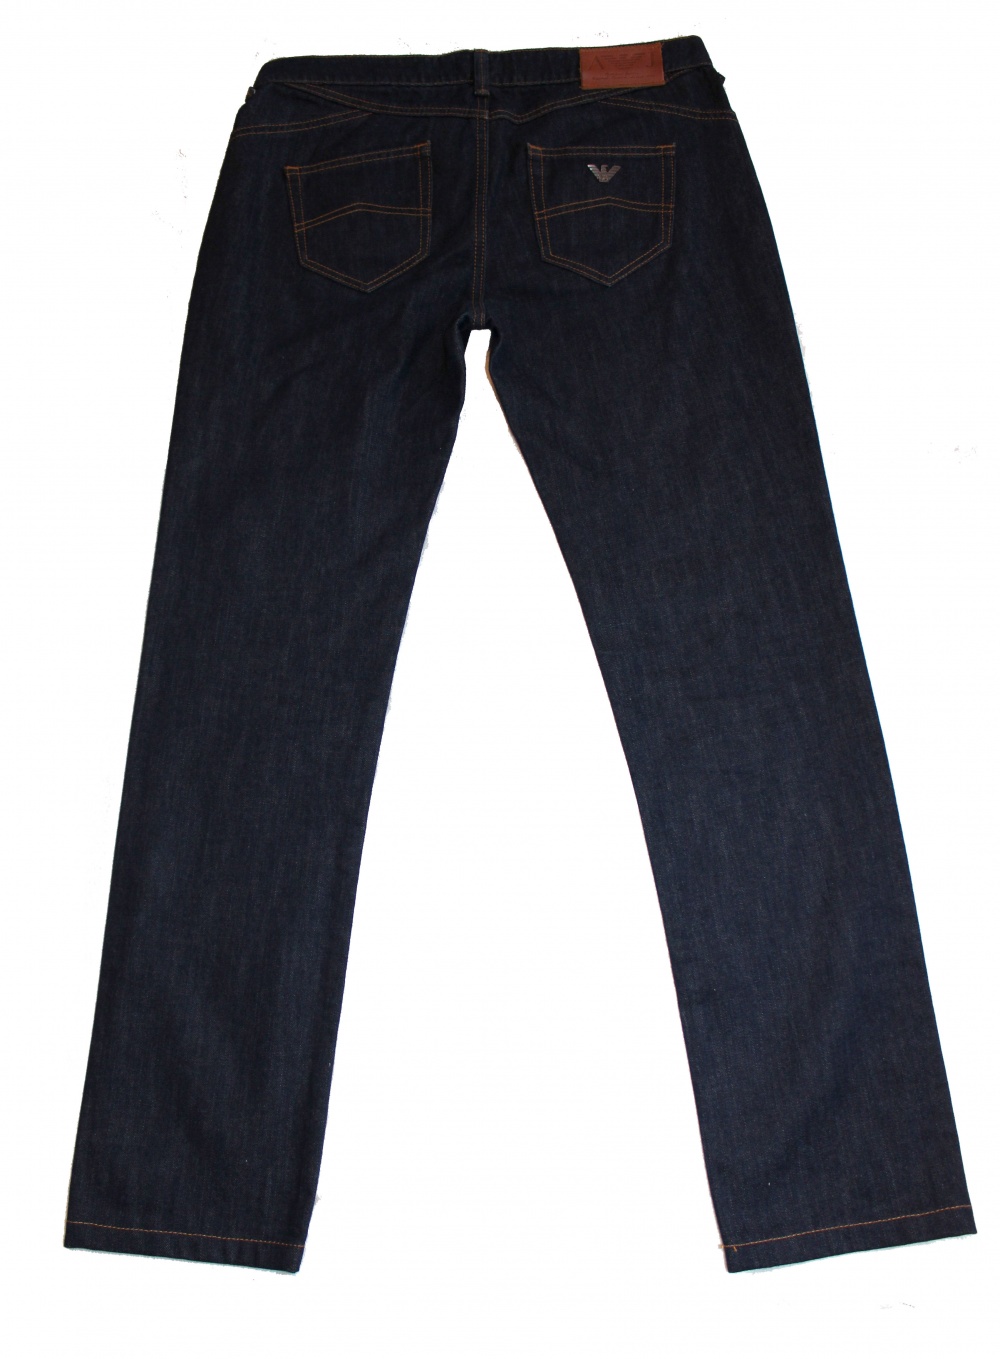 Джинсы Armani Jeans 29 размер